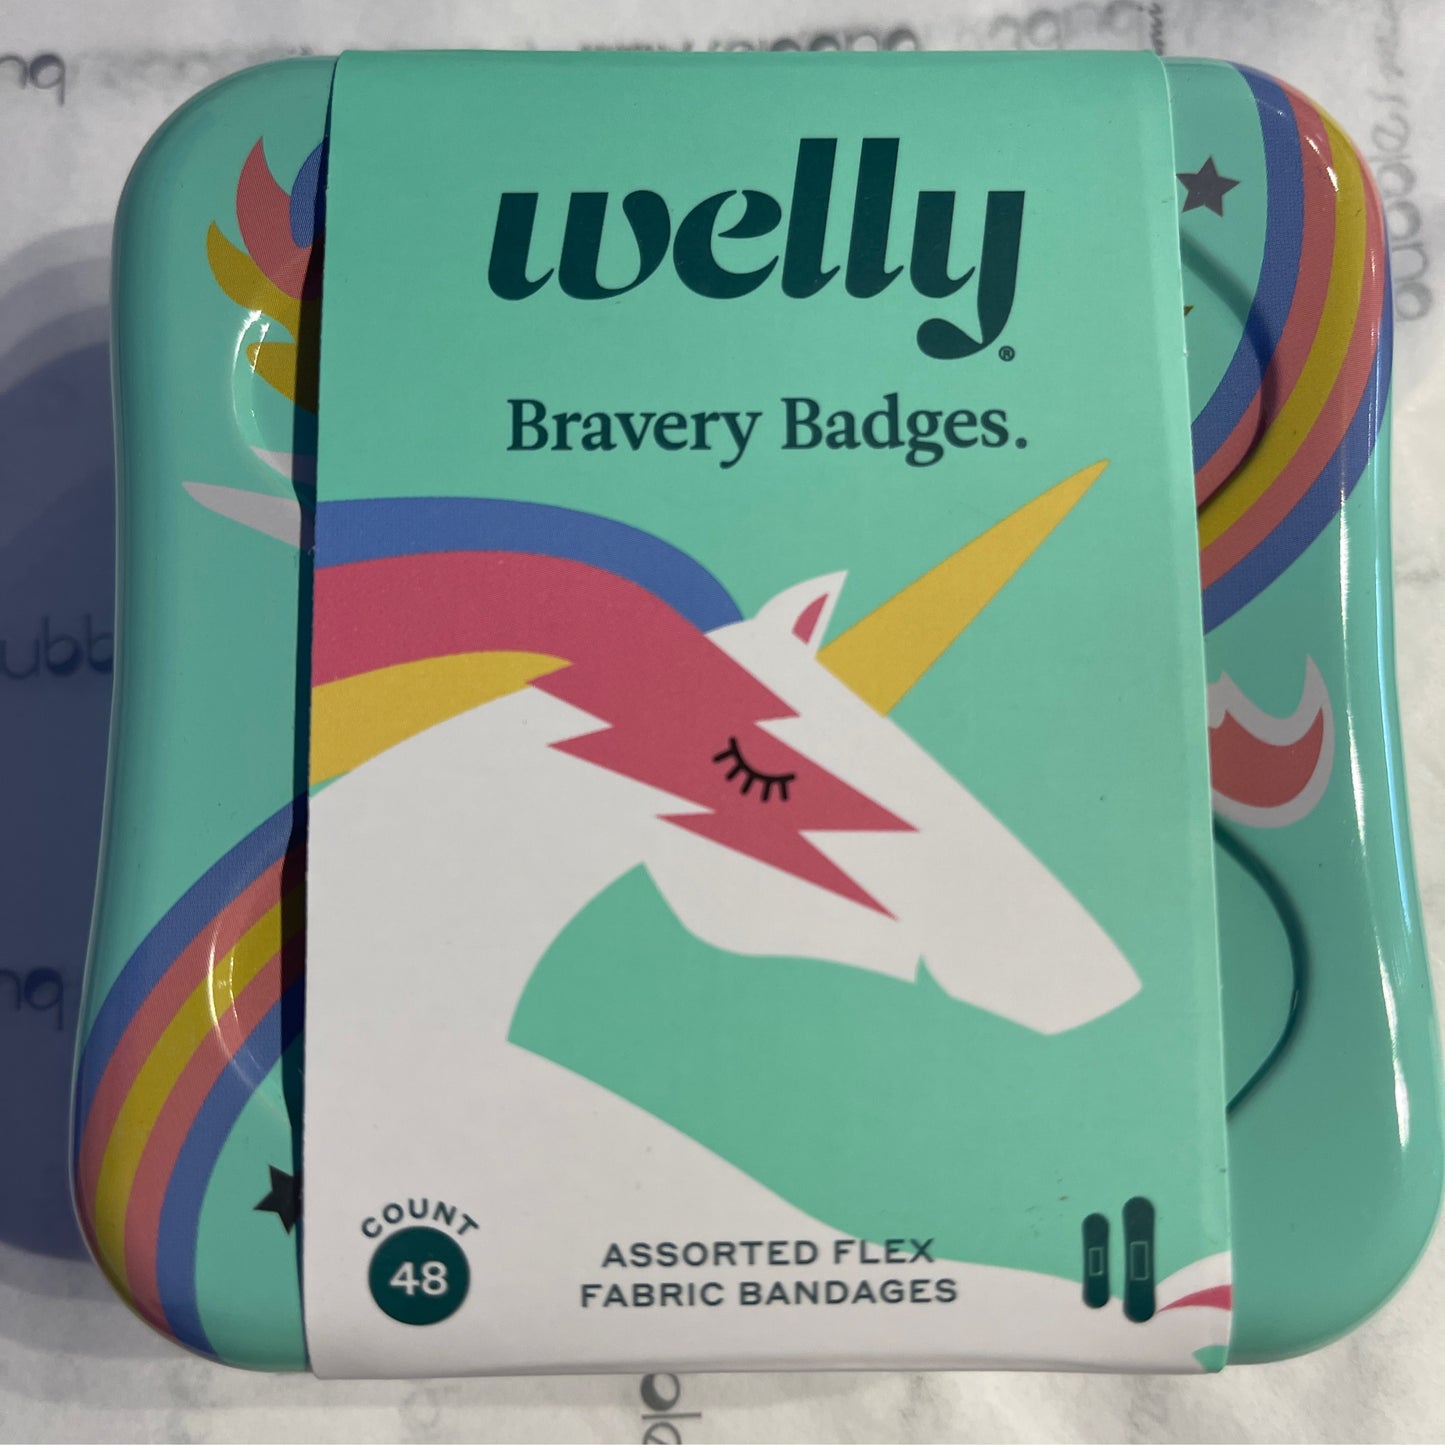 WELLY Bravery Badges Unicorn flex bandages